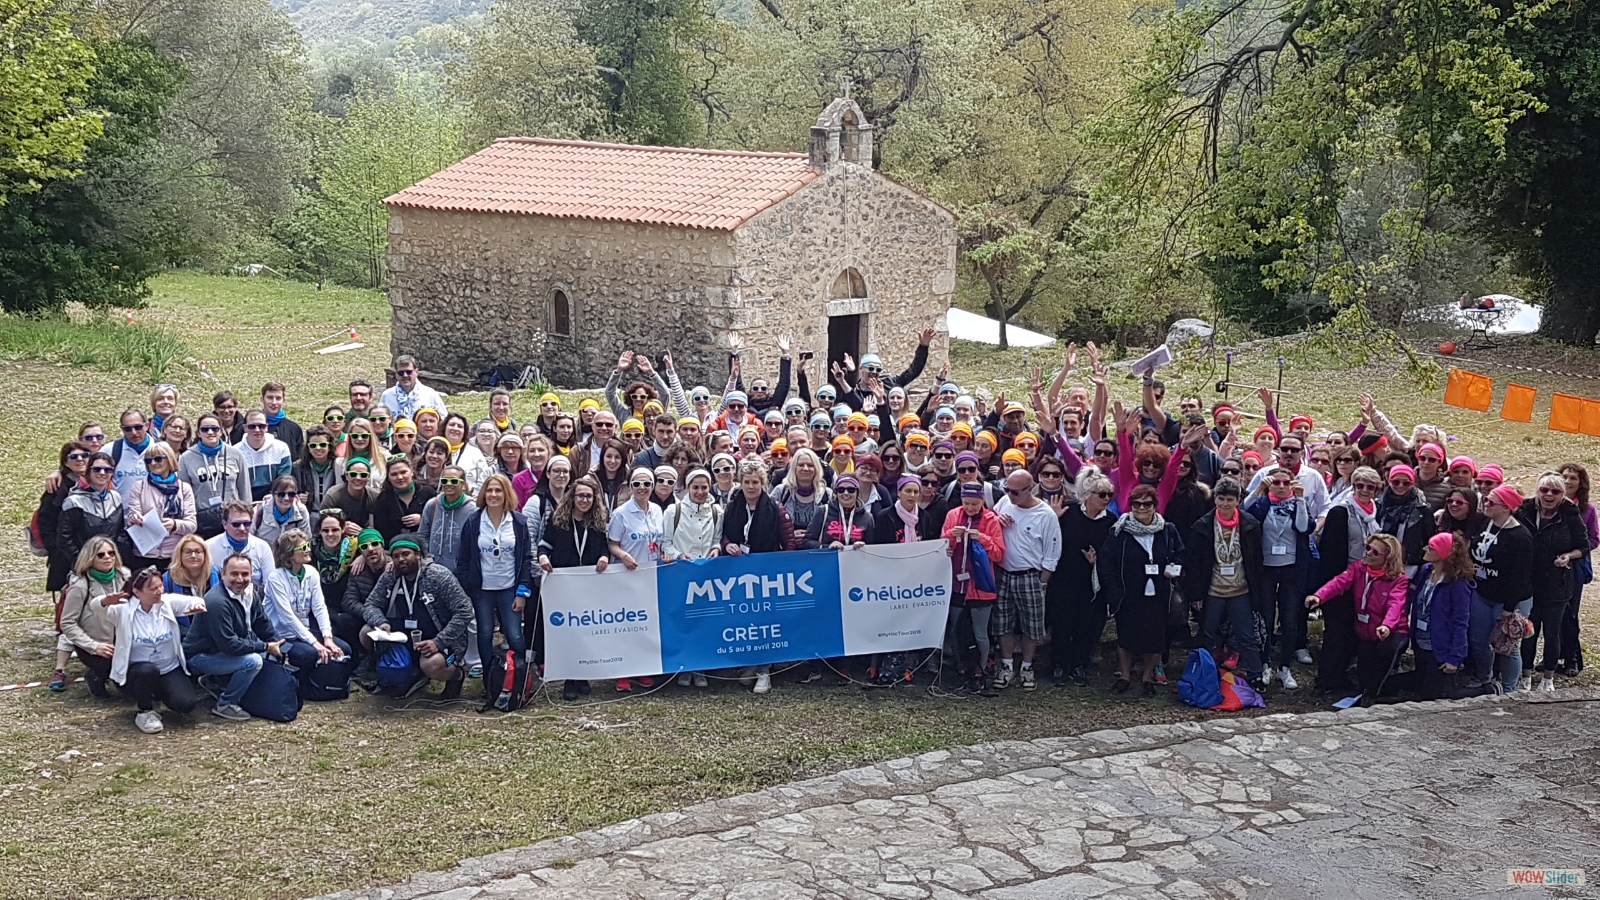 Mythic Tour d'Héliades en Crète en avril 2018